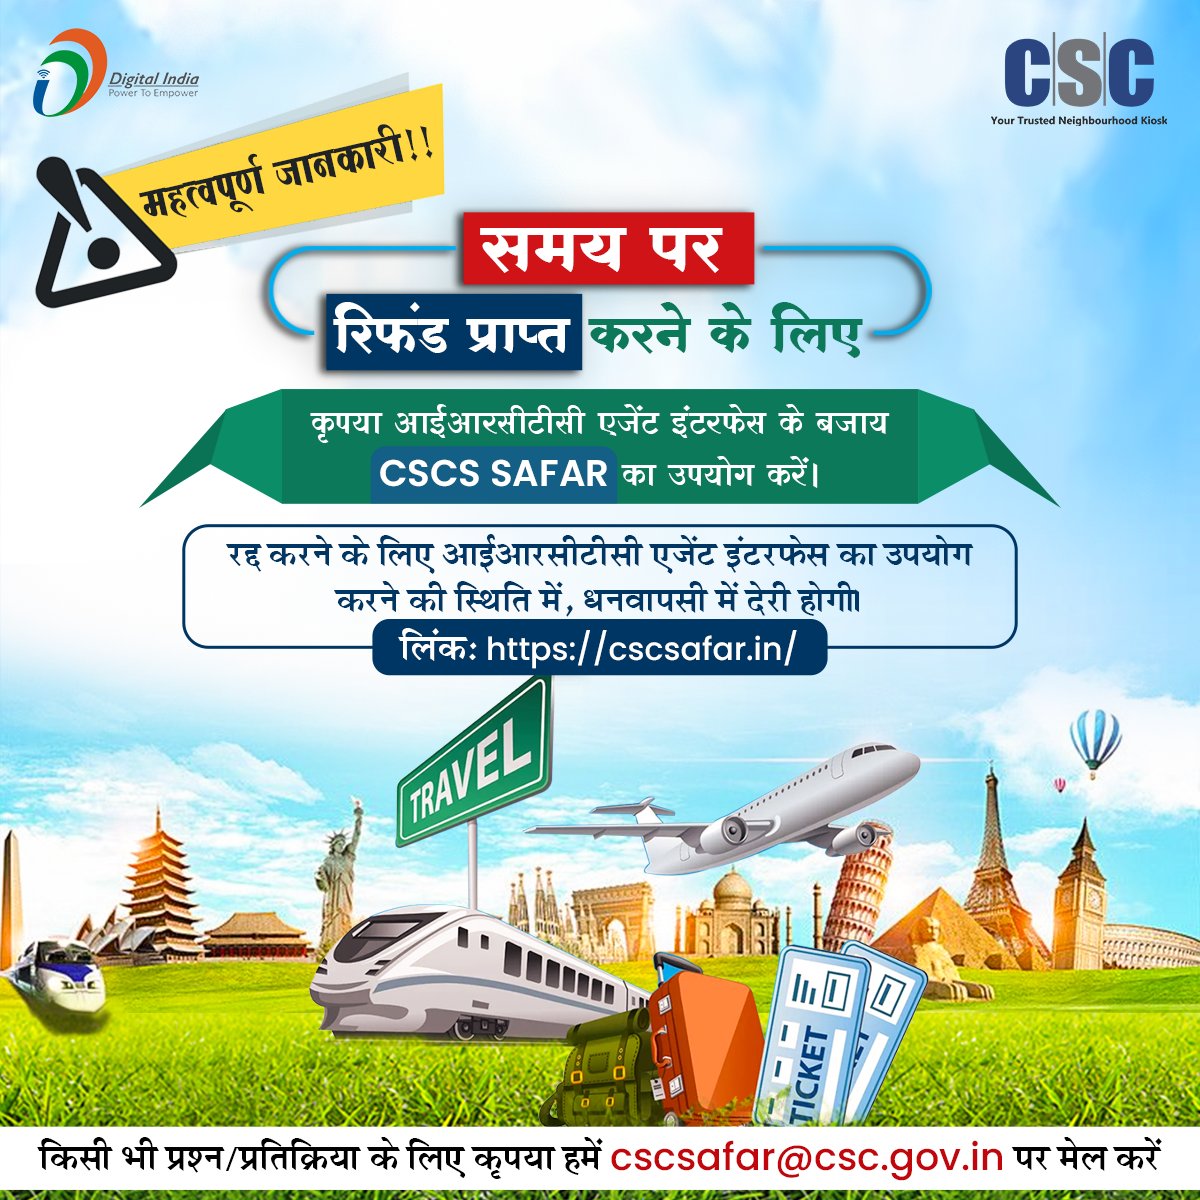 महत्त्वपूर्ण जानकारी!!

समय पर रिफंड प्राप्त करने के लिए कृपया आईआरसीटीसी एजेंट इंटरफेस के बजाय CSCS SAFAR का उपयोग करें।

#cscsafar #csc #digitalindia #csctravelservices #irctc #trainbooking #csctrainbooking